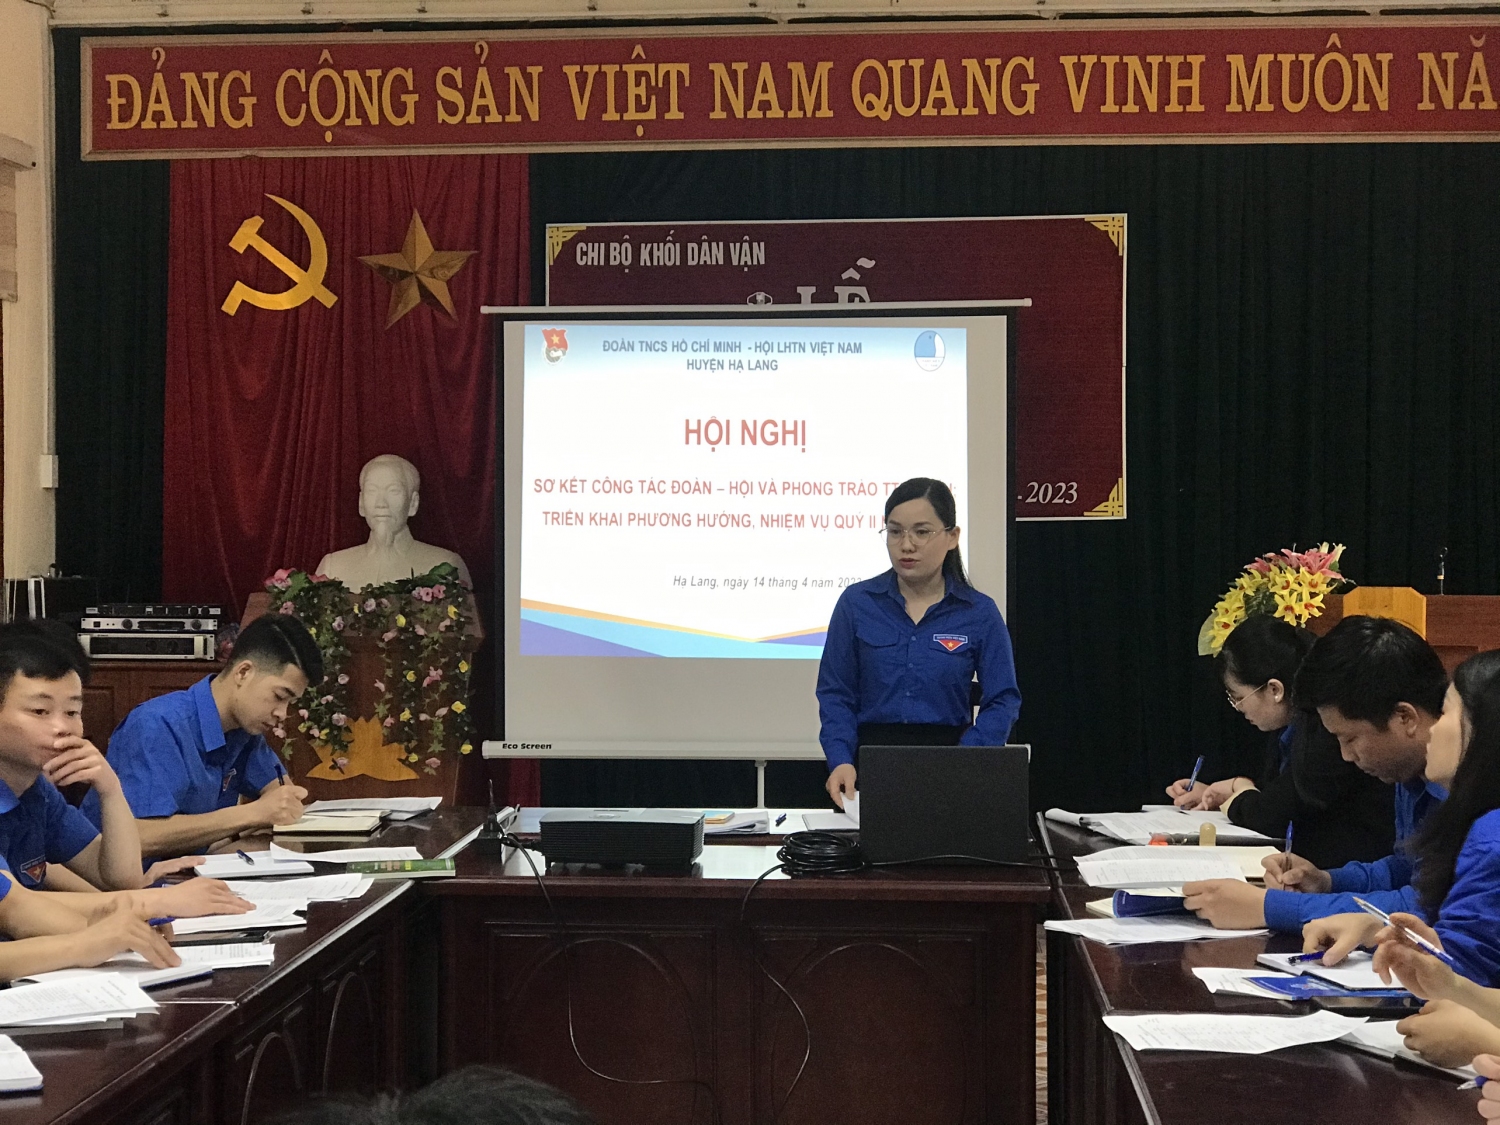 Hội nghị sơ kết Công tác Đoàn - Hội và phong trào Thanh thiếu nhi huyện Hạ Lang quý I năm 2023.